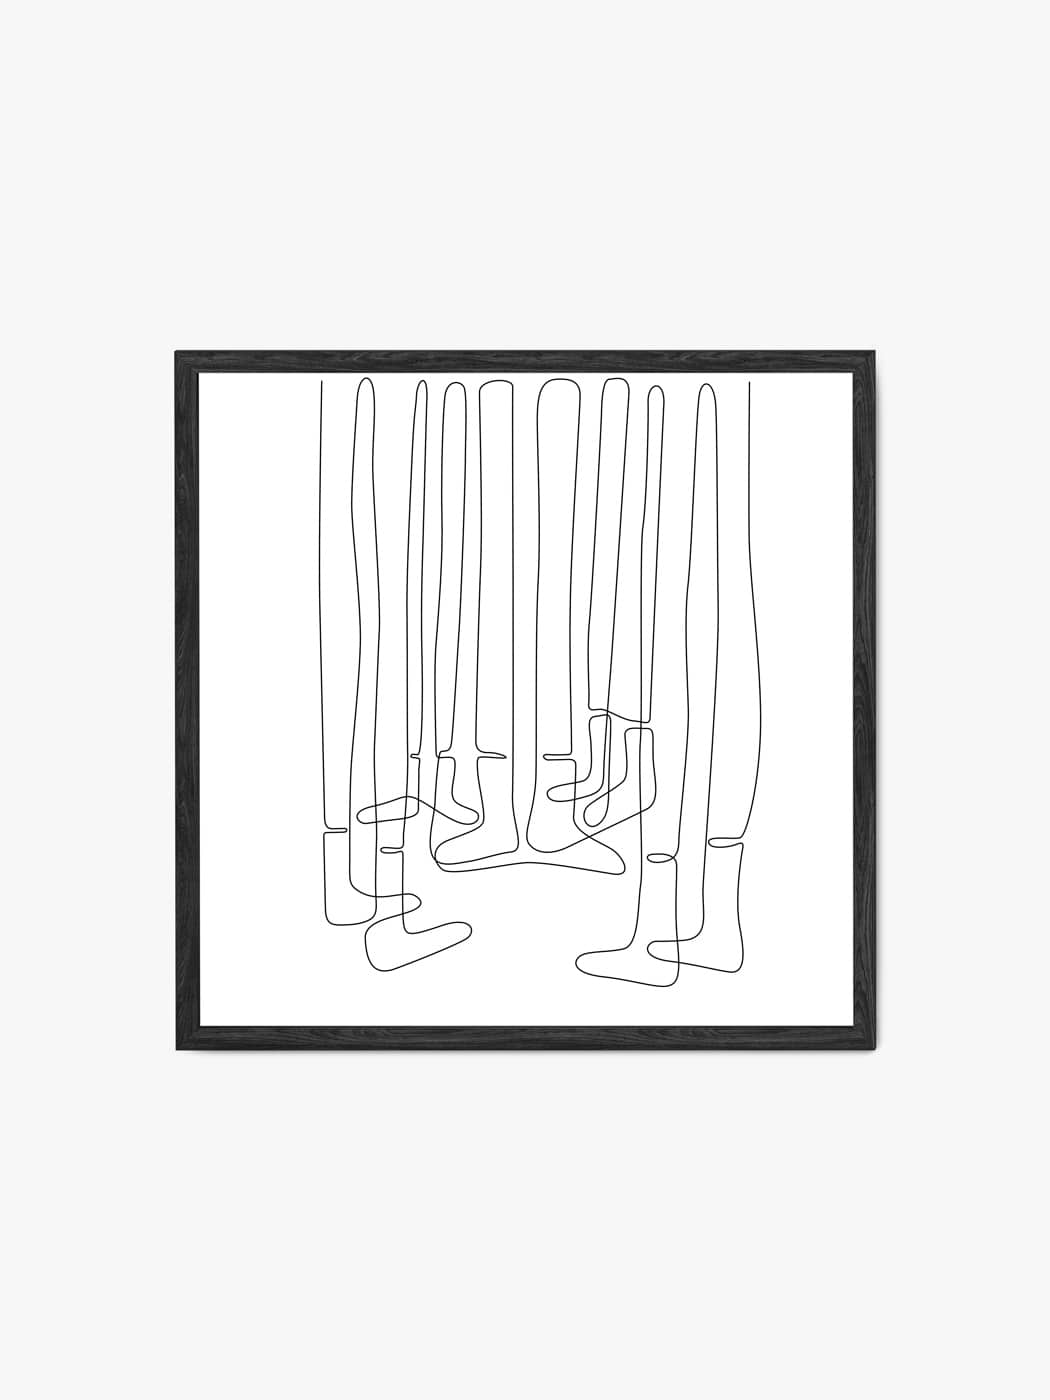 Obraz akustyczny - Plakat line art nogi w skarpetkach - Dominika Jędrzejek